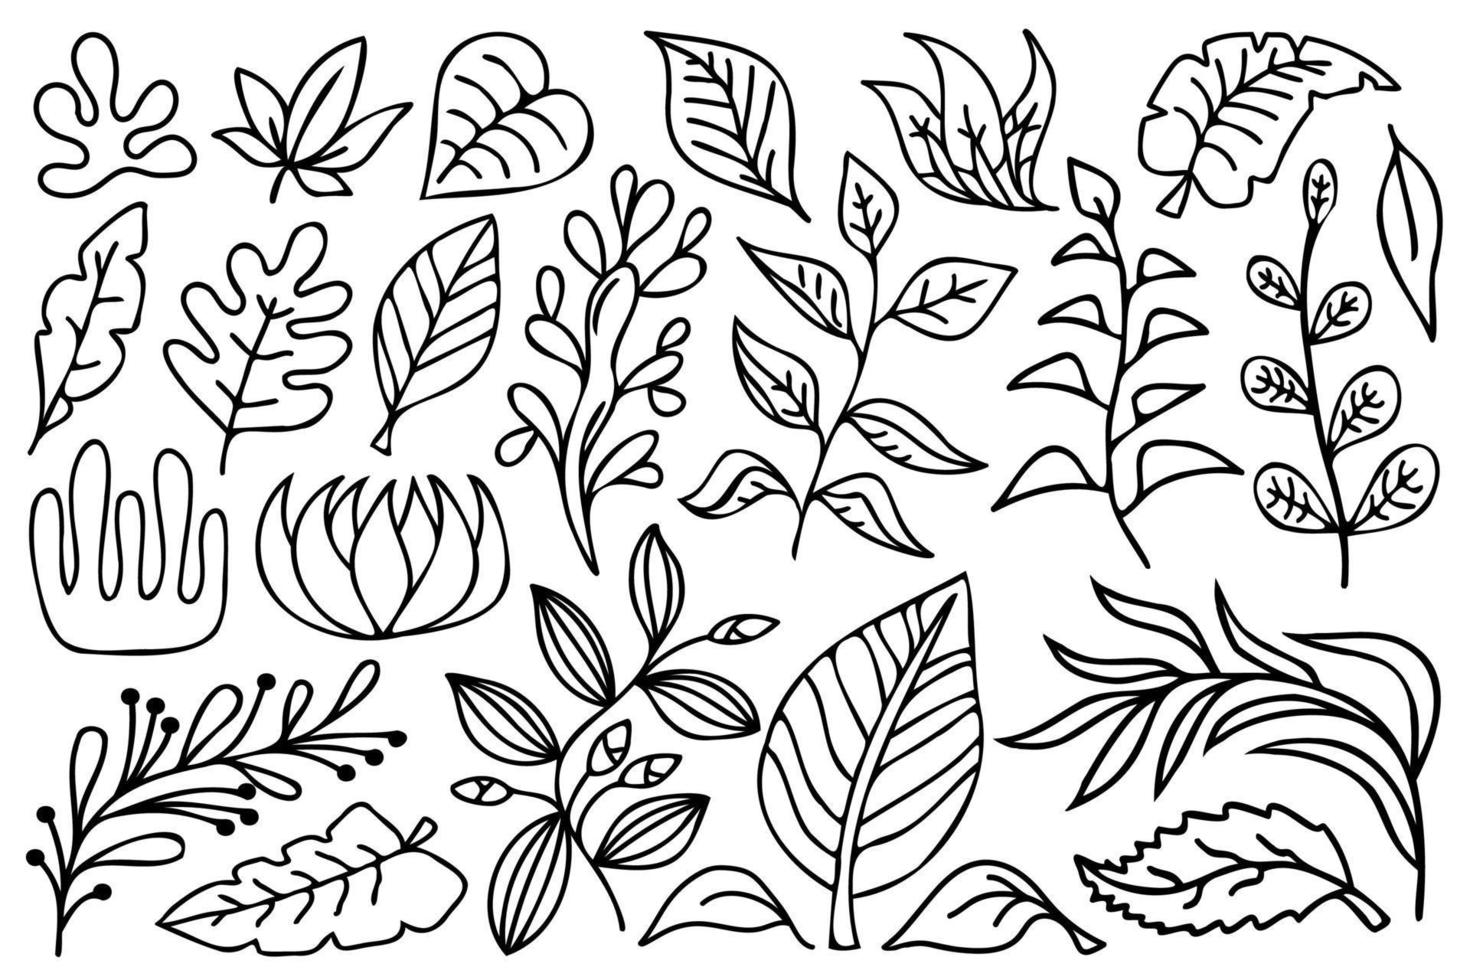 svart kontur botaniska designelement. linjekonst blommor, grenar och löv, svart och vit vektorillustration set. vektor